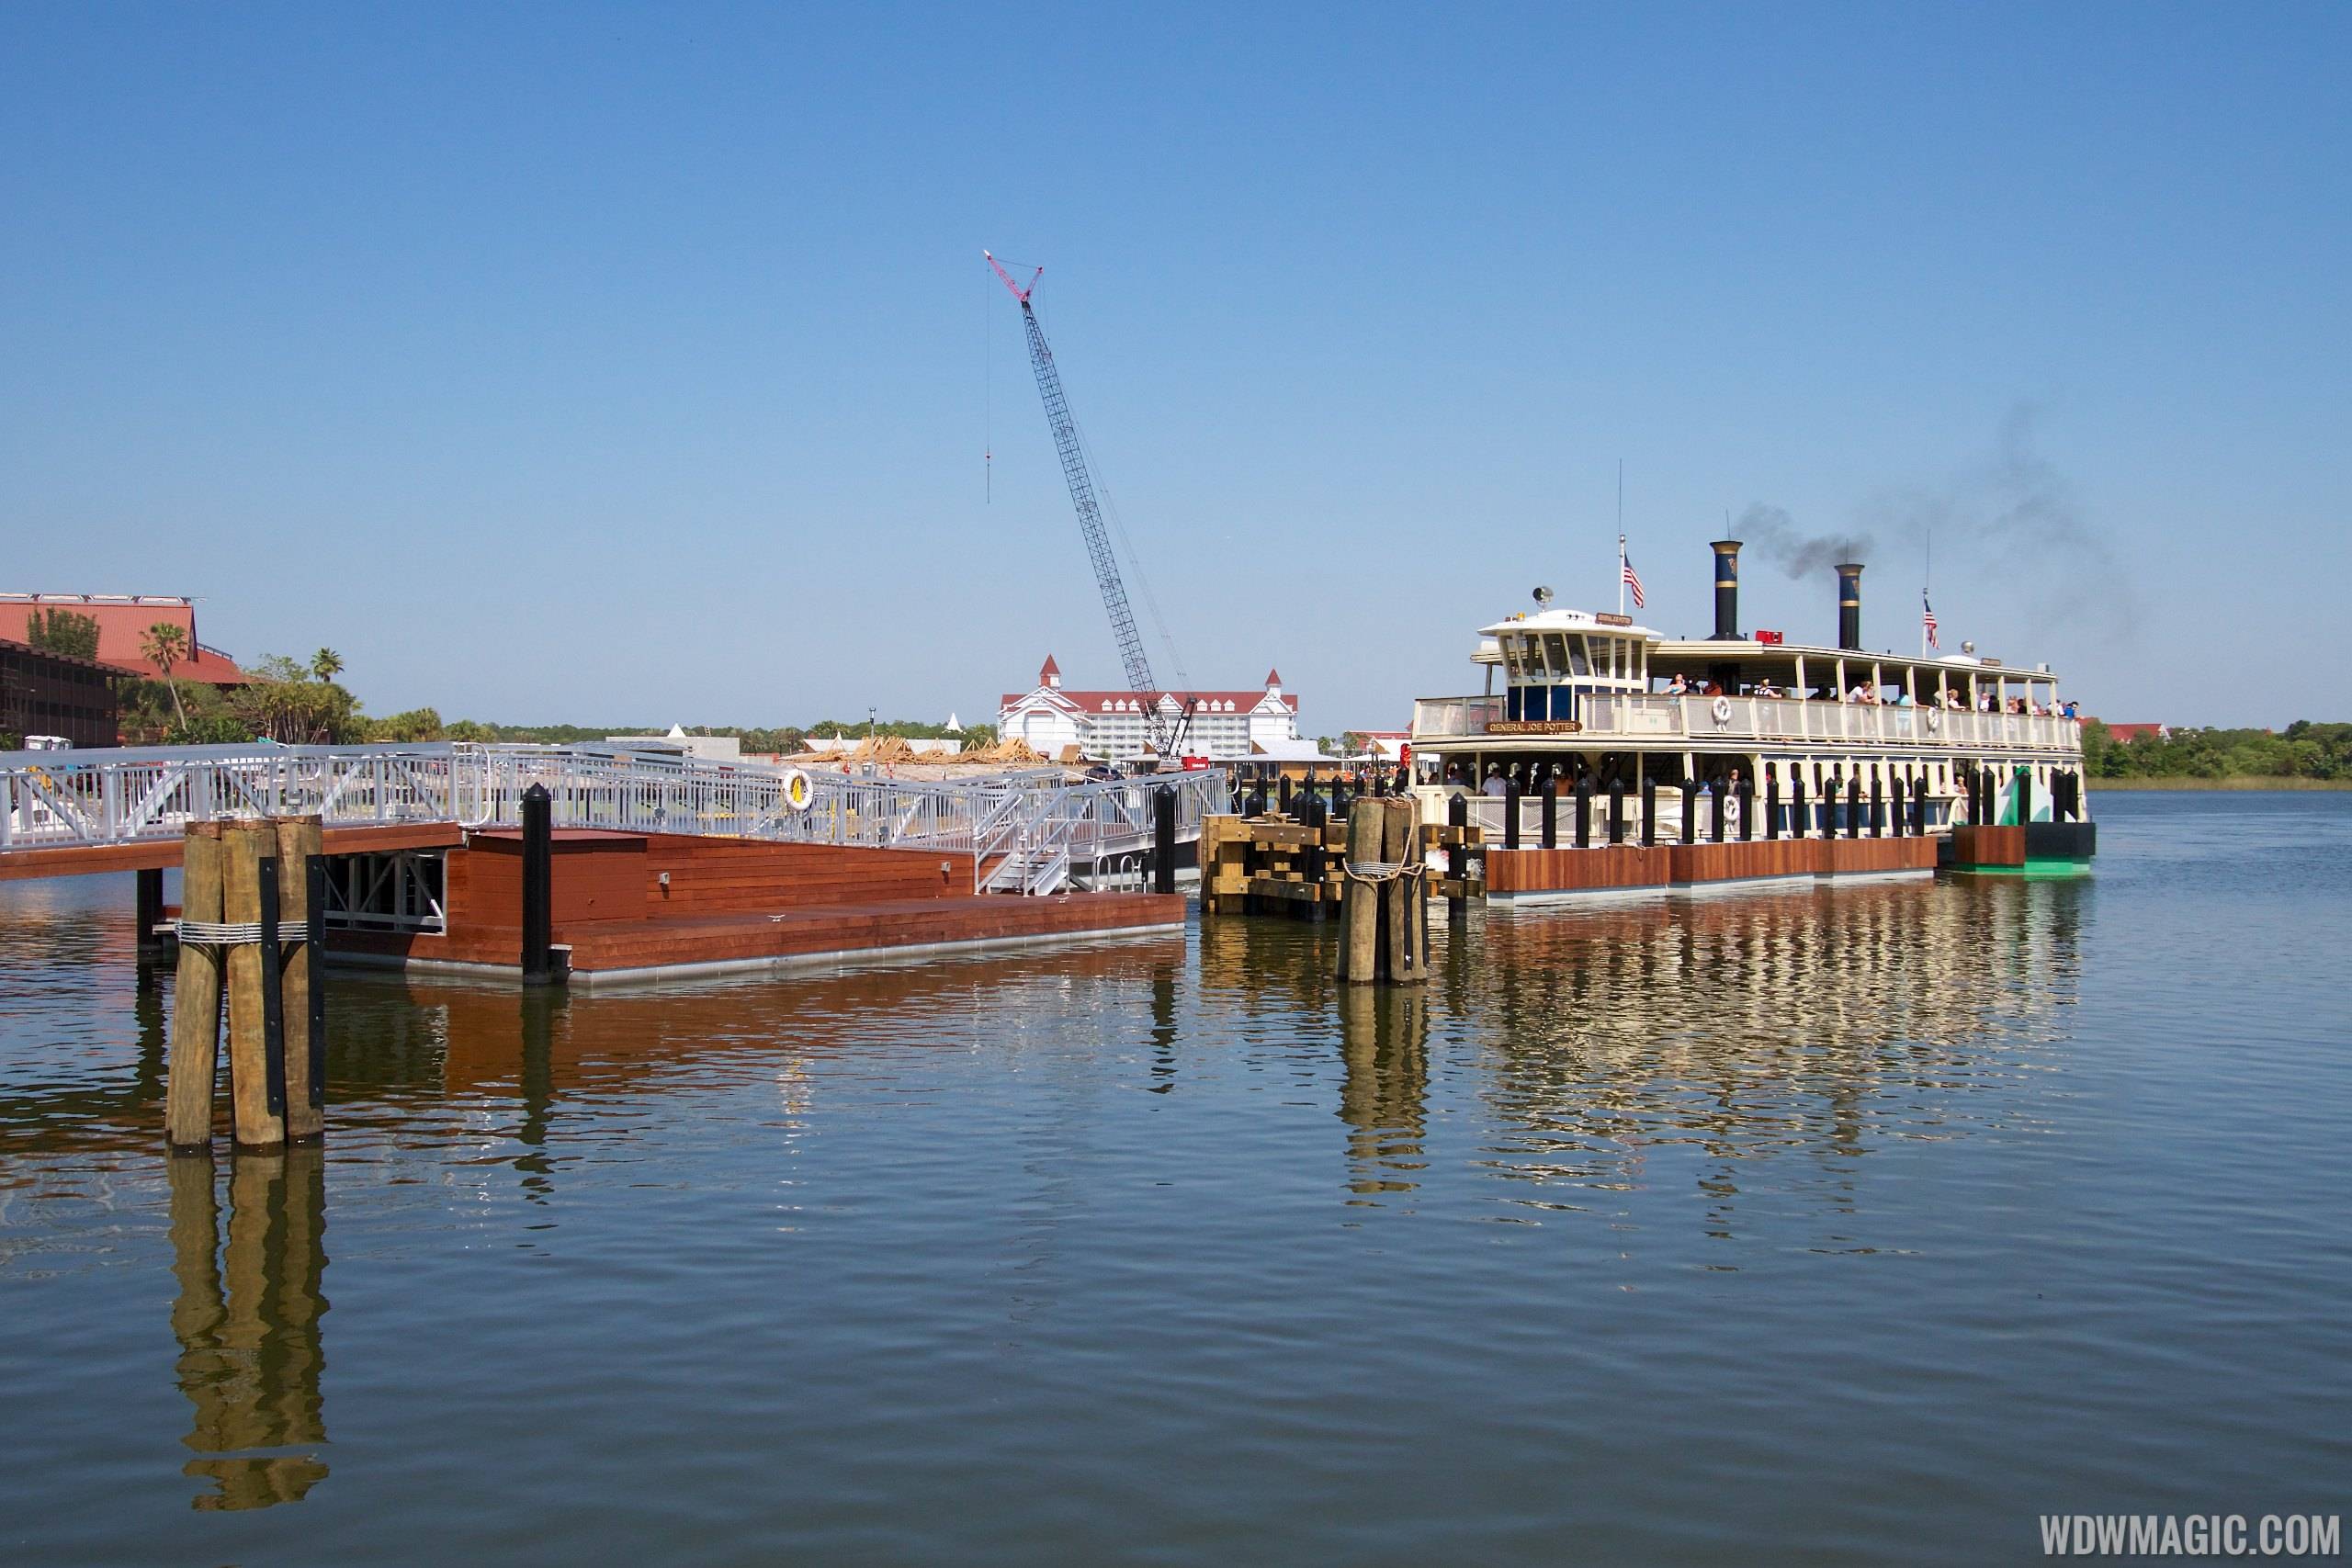 TTC Ferry boat dock in operation